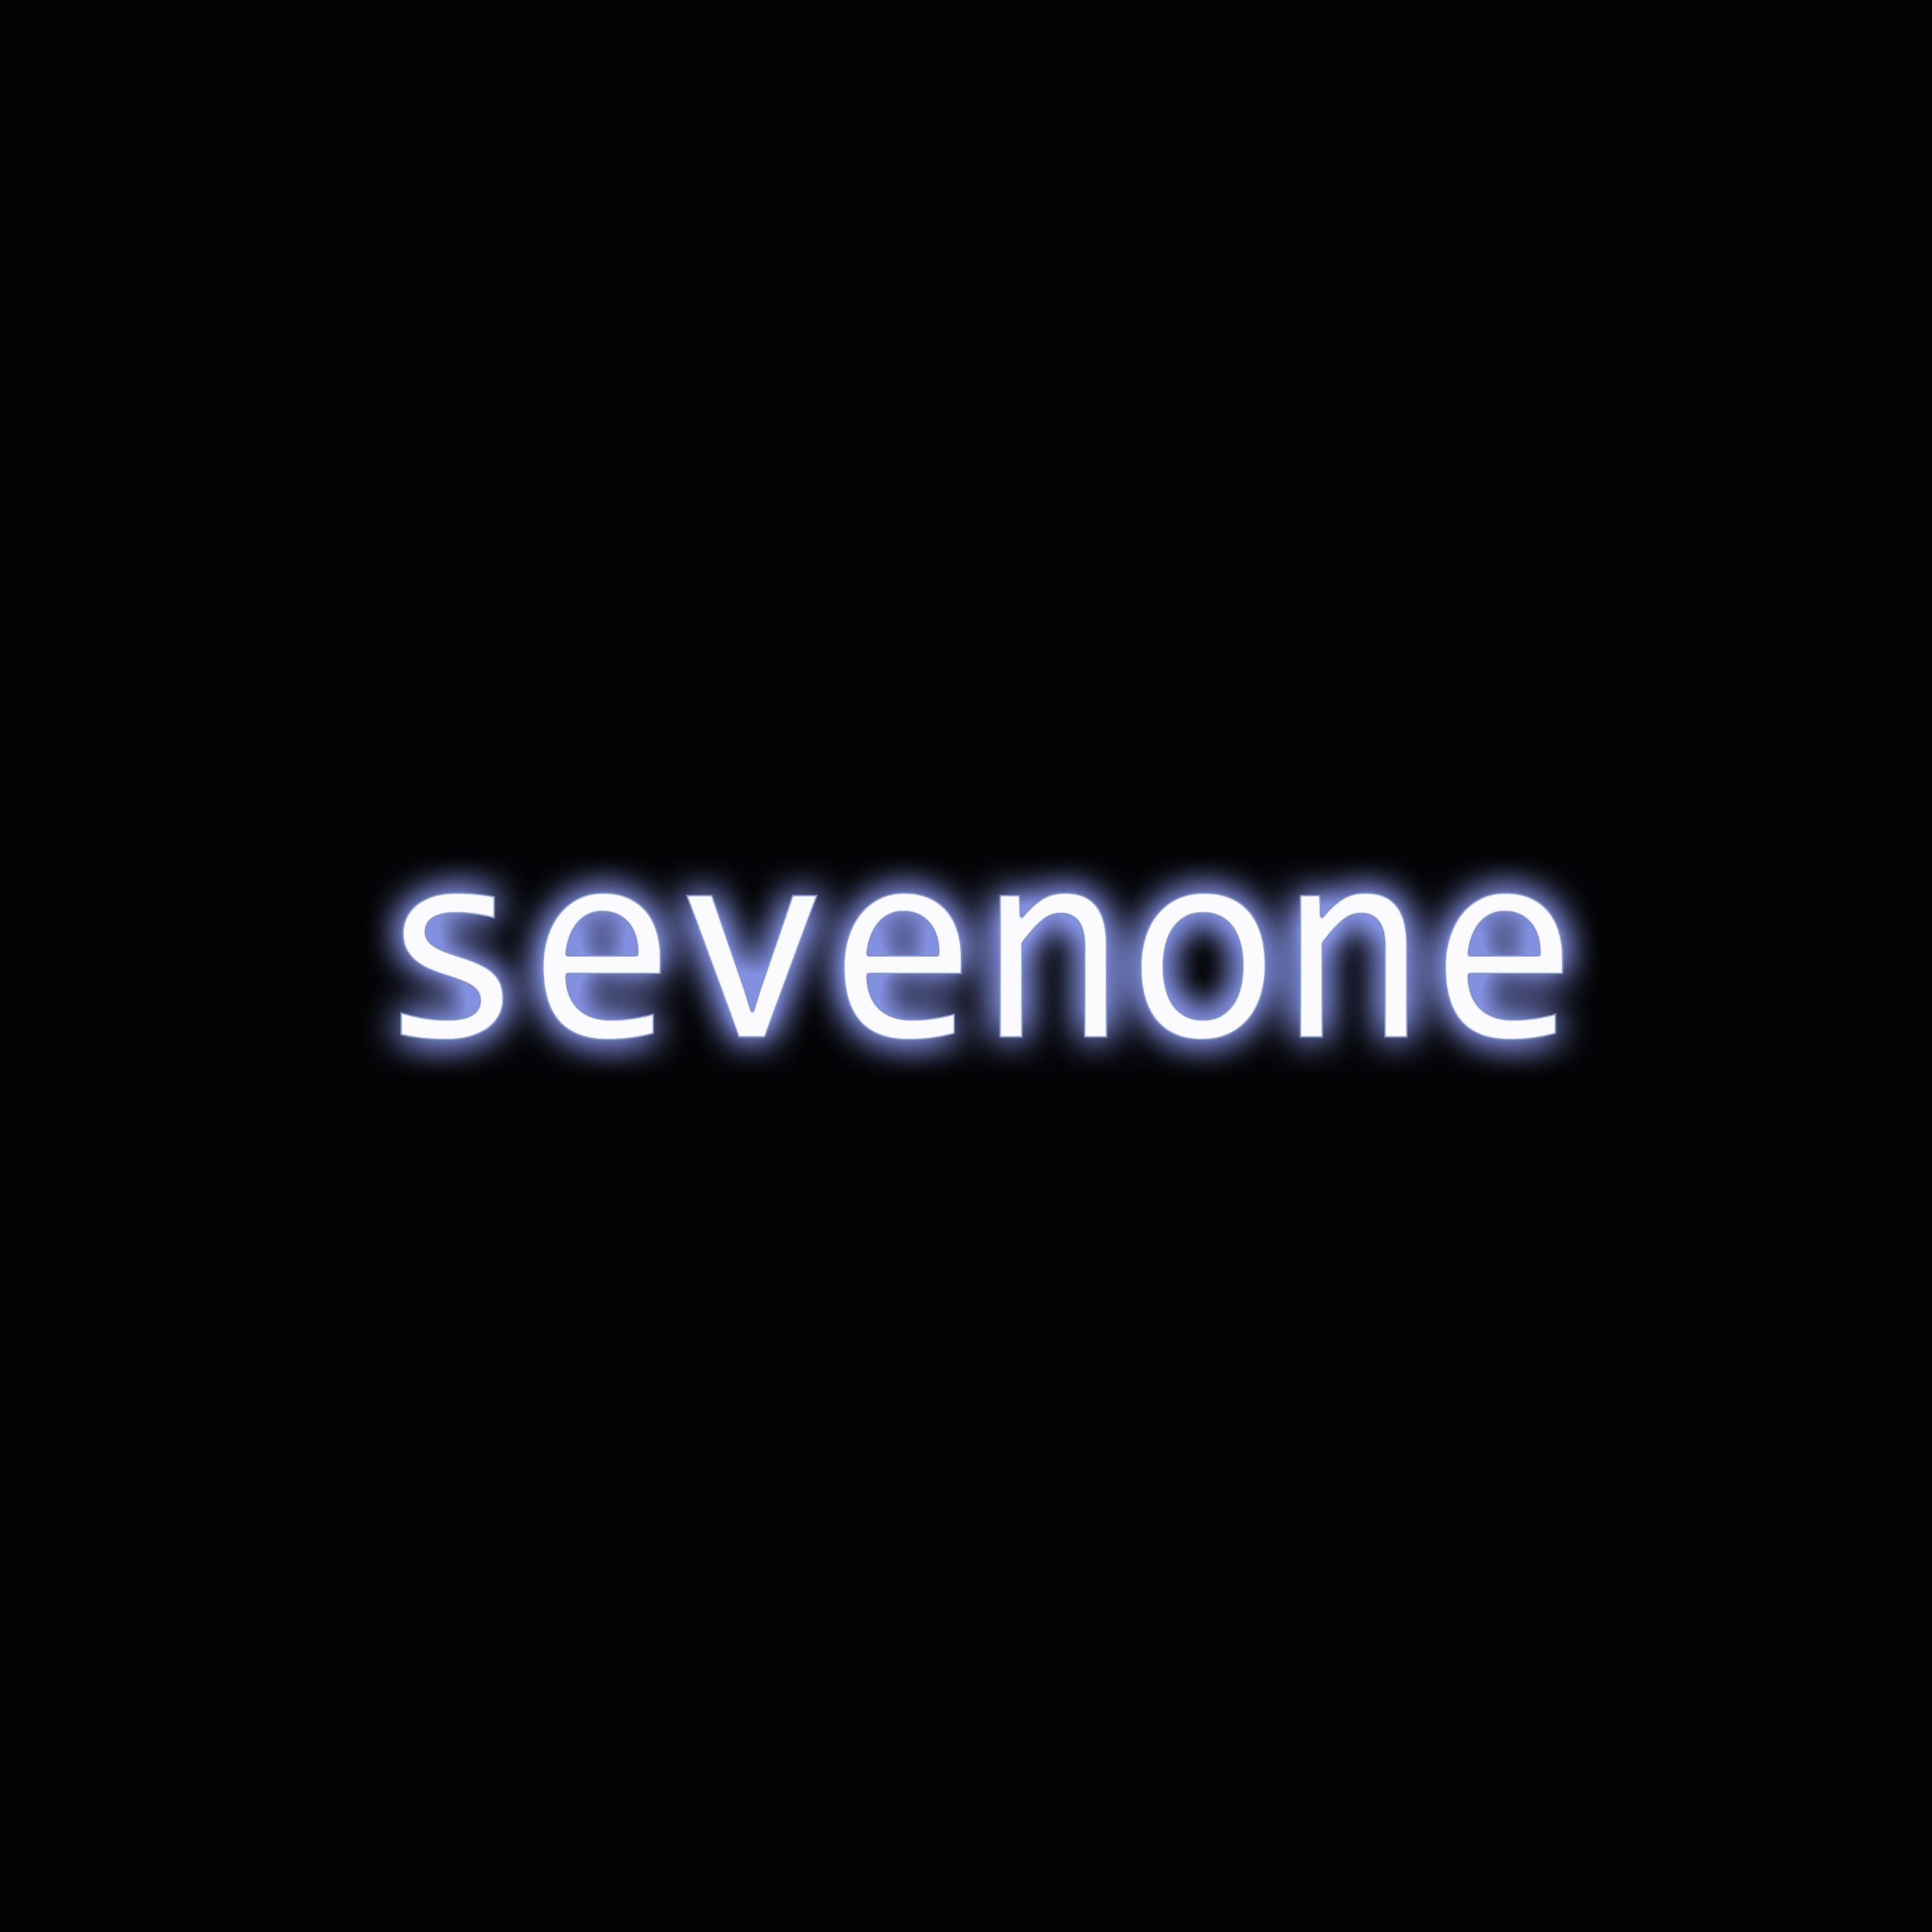 Sevenone